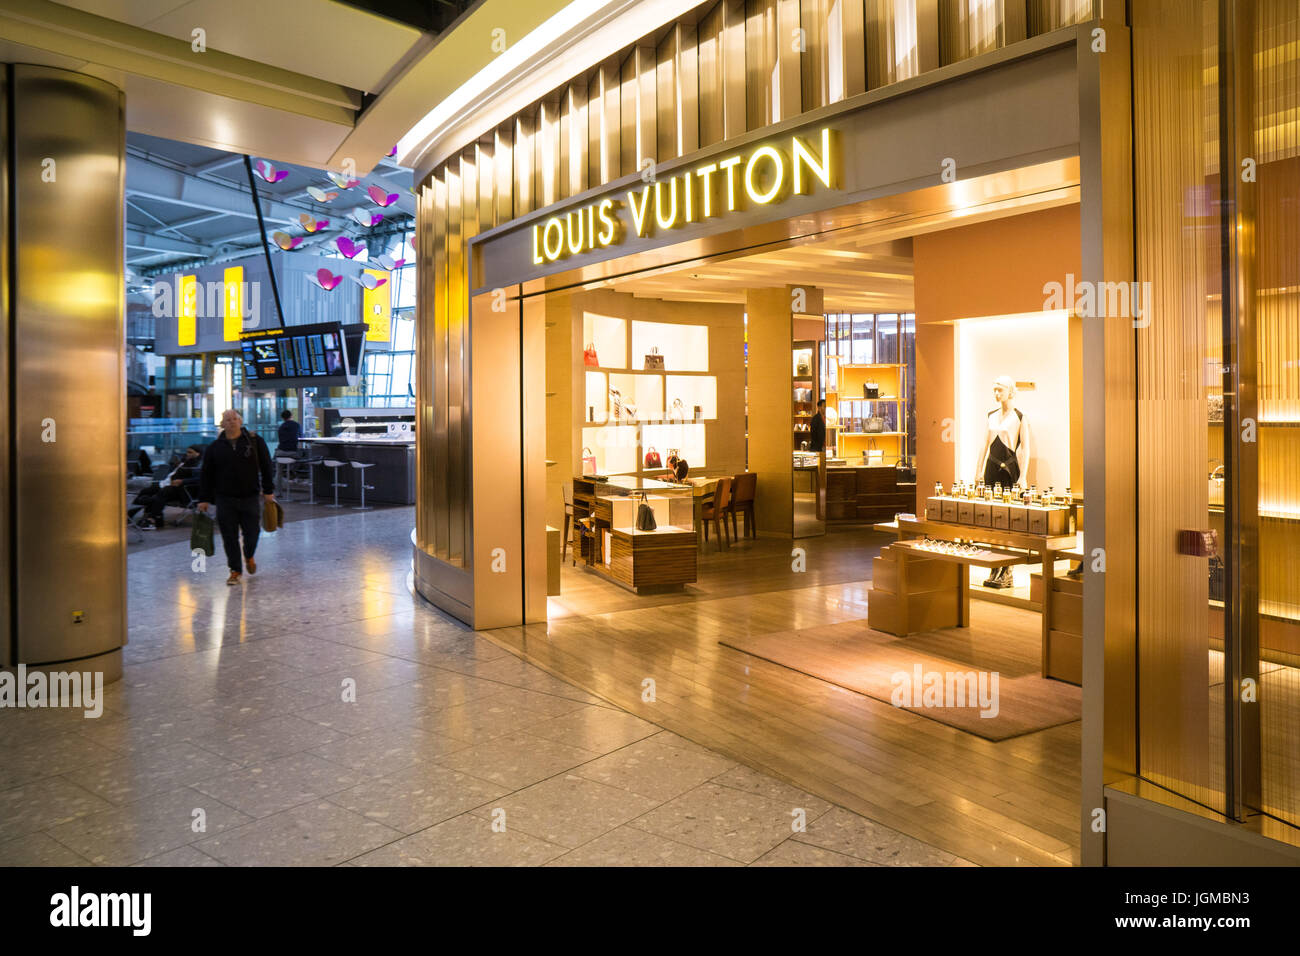 Louis Vuitton arrives at Heathrow Terminal 5